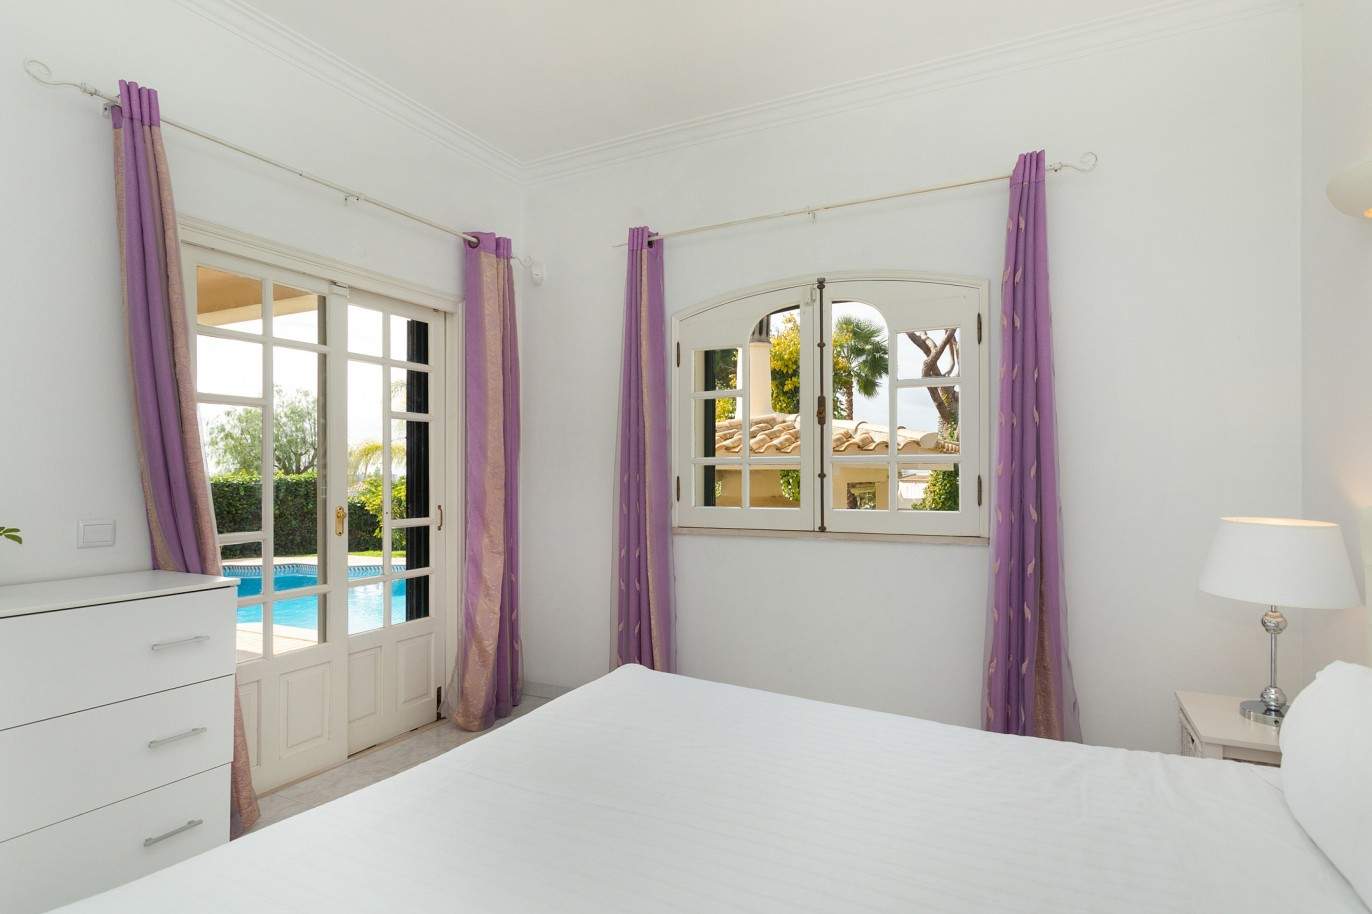 5 Bedroom Villa with pool for sale in Vilamoura, Algarve_212555